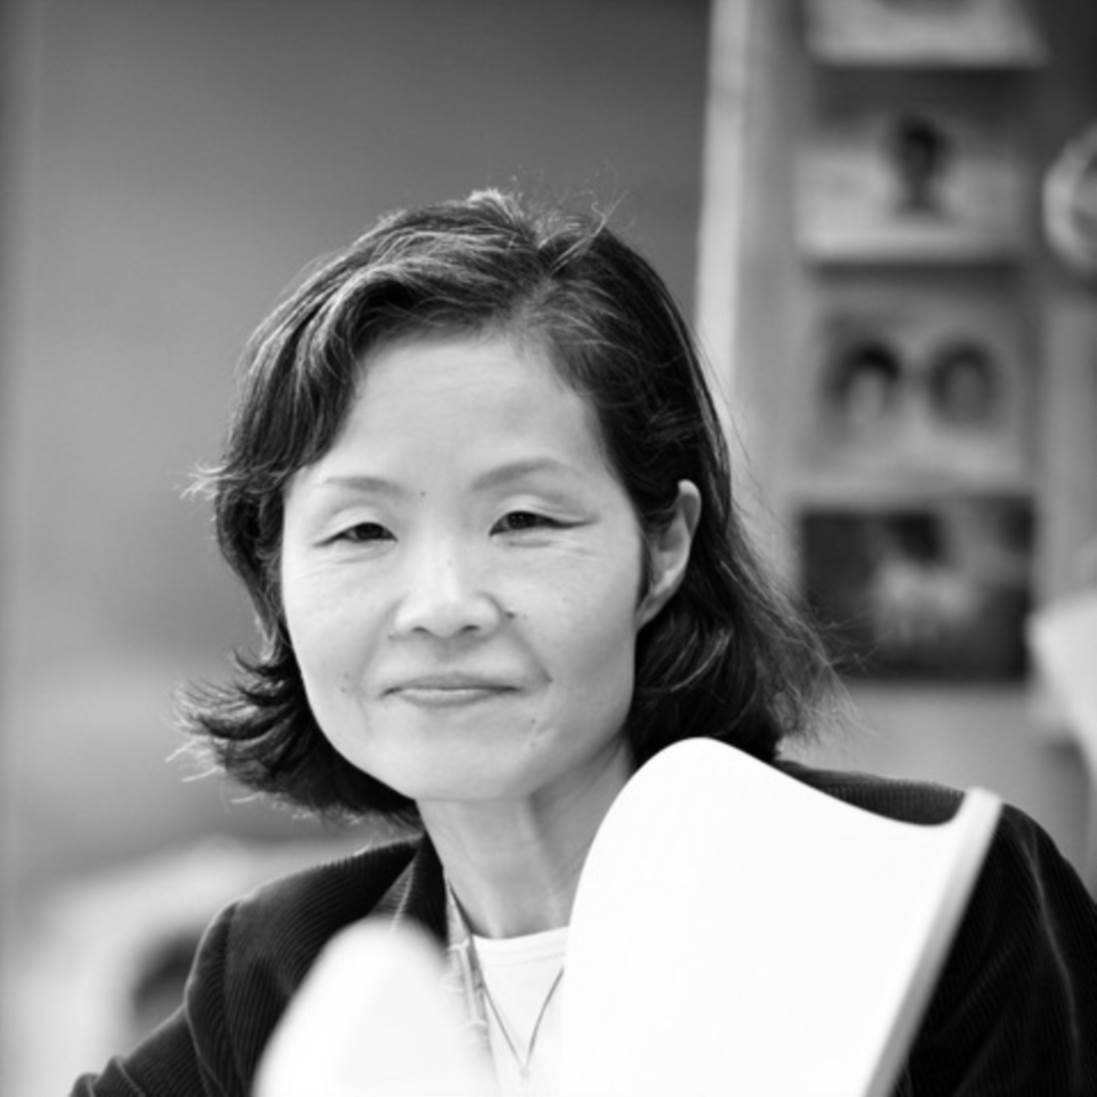 Tomoko Mizu